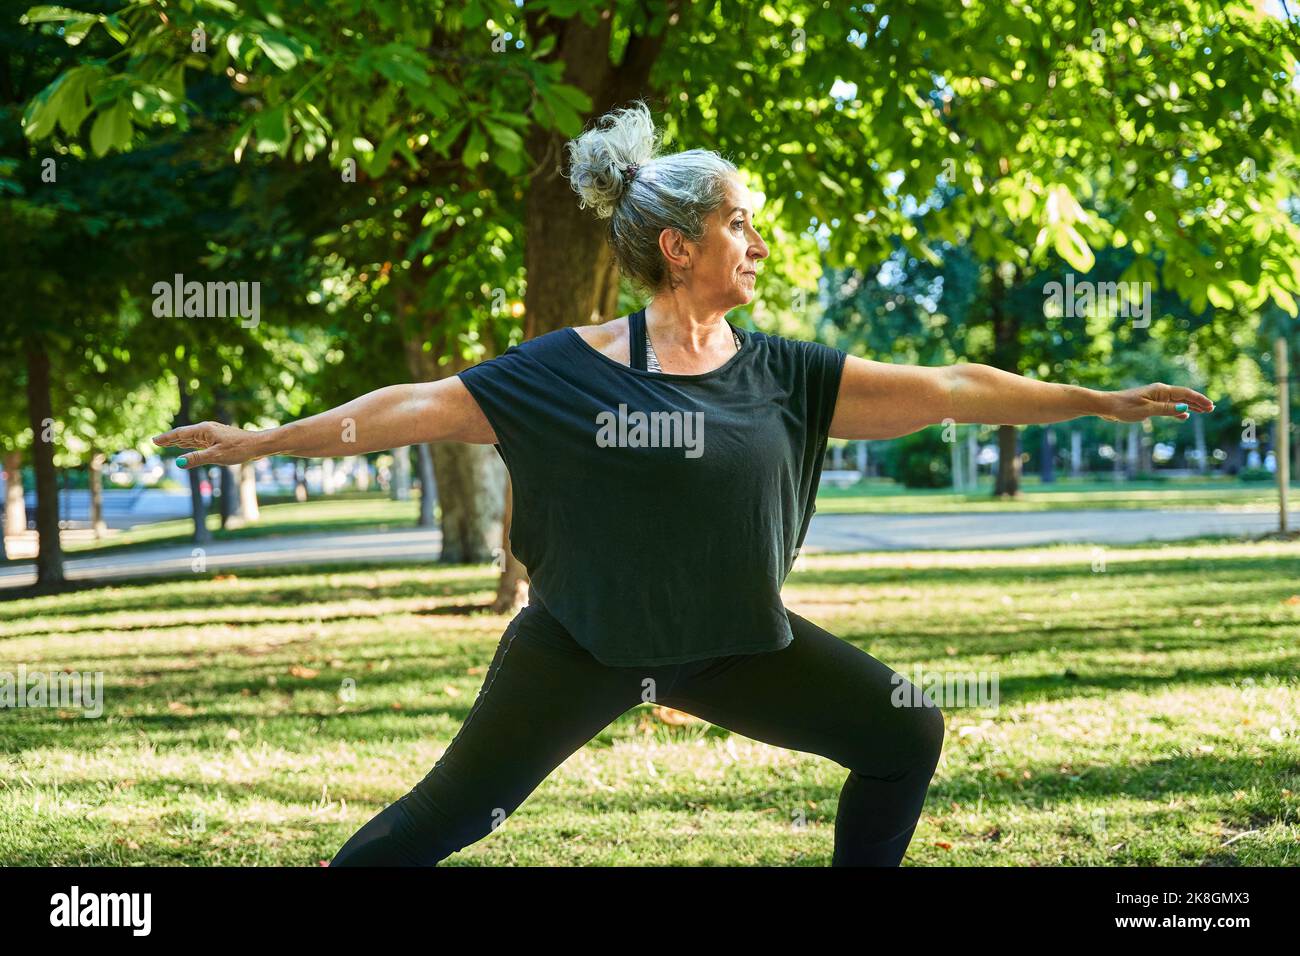 Seitenansicht einer fokussierten älteren Frau in aktivem Ohr mit einem Bun, das in Virabhadrasana steht, während sie im Park unter grünen Blattbäumen auf der sonnigen da Yoga praktiziert Stockfoto